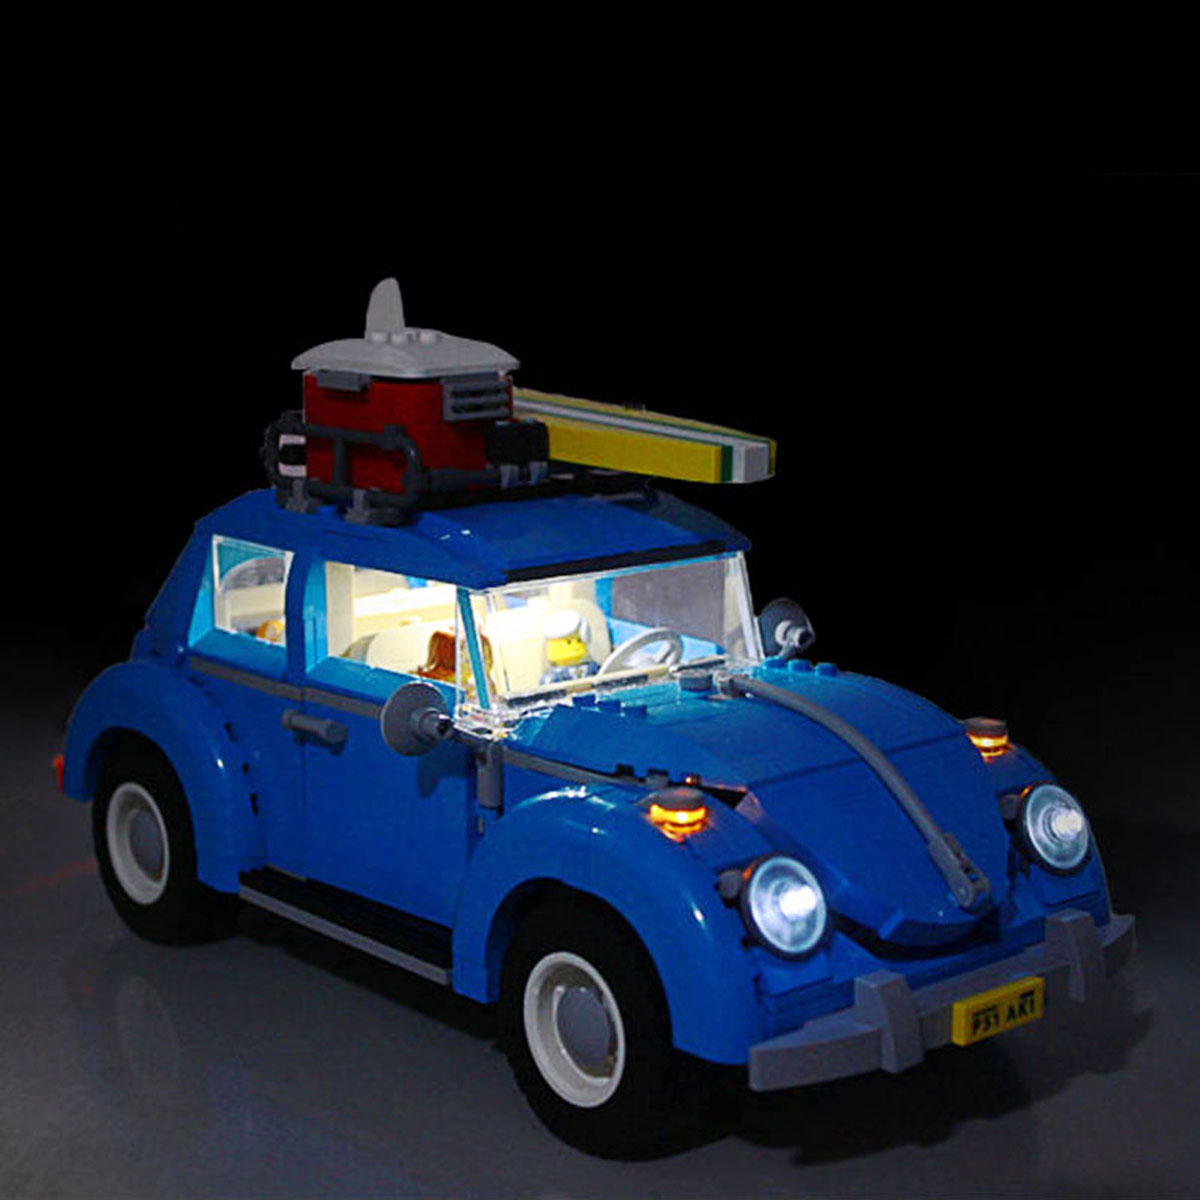 LED-Light-Lighting-Kit-DIY-ONLY-For-Lego-10252-Volk-swagen-Beetle-Model-Bricks-21003-1338710-2